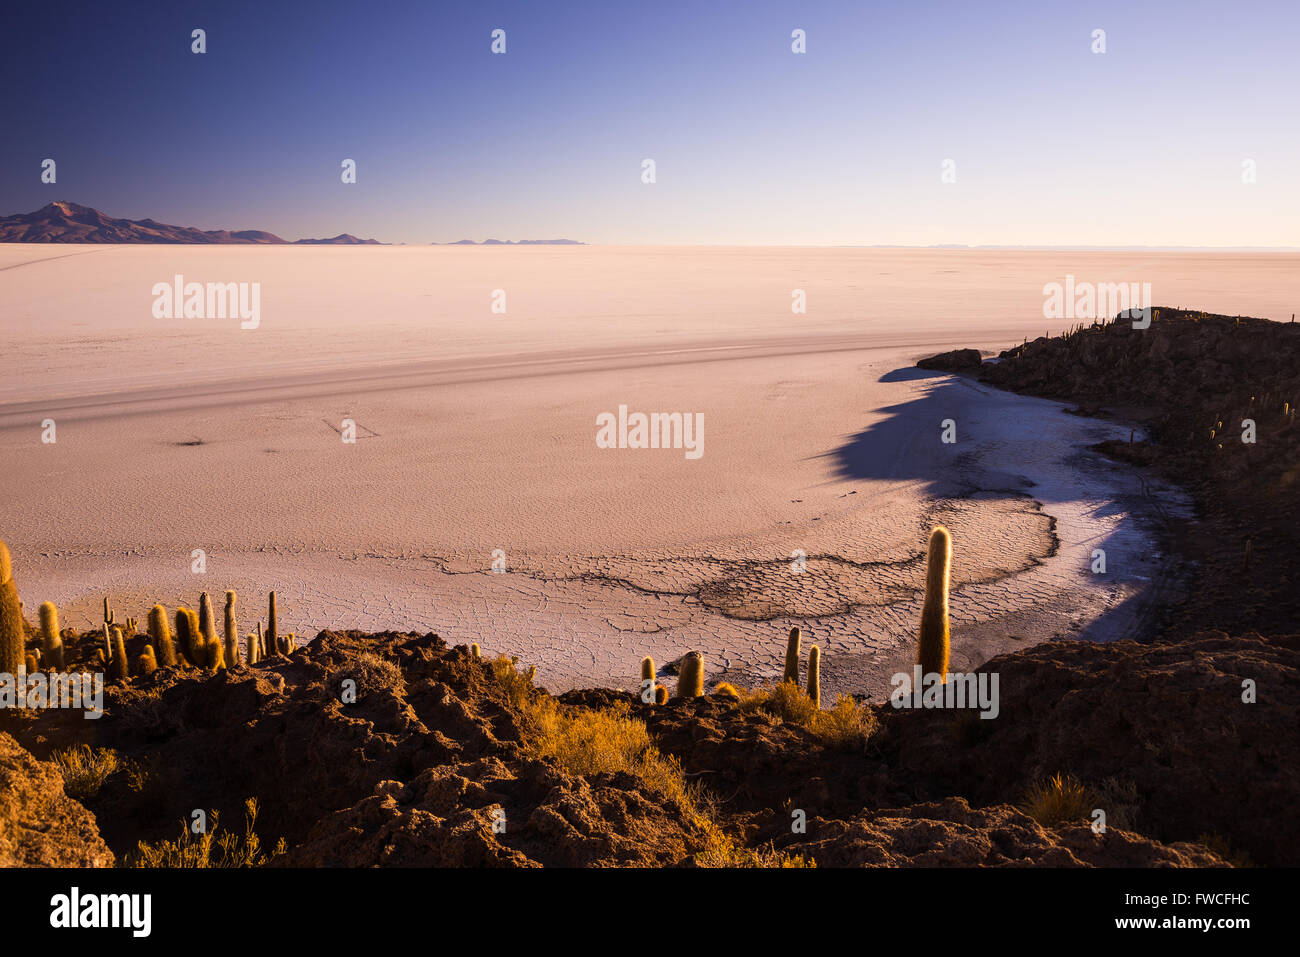 Vue grand angle de l'Uyuni Salt Flat, la plus importante destination de voyage en Bolivie. Cliché pris à l'aube de la s Banque D'Images